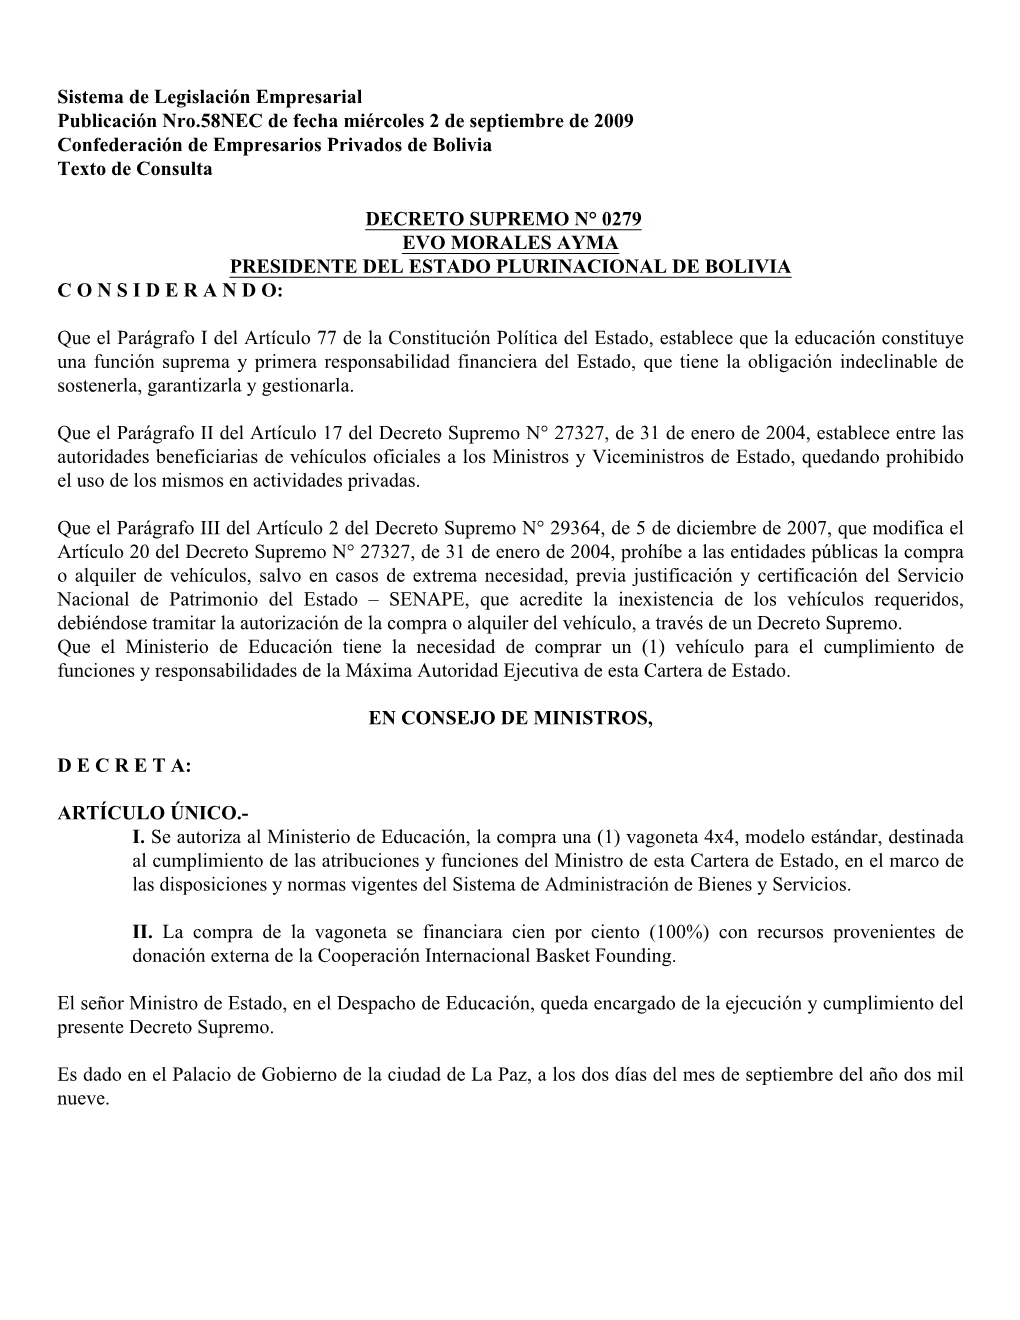 Sistema De Legislación Empresarial Publicación Nro.58NEC De Fecha Miércoles 2 De Septiembre De 2009 Confederación De Empresarios Privados De Bolivia Texto De Consulta